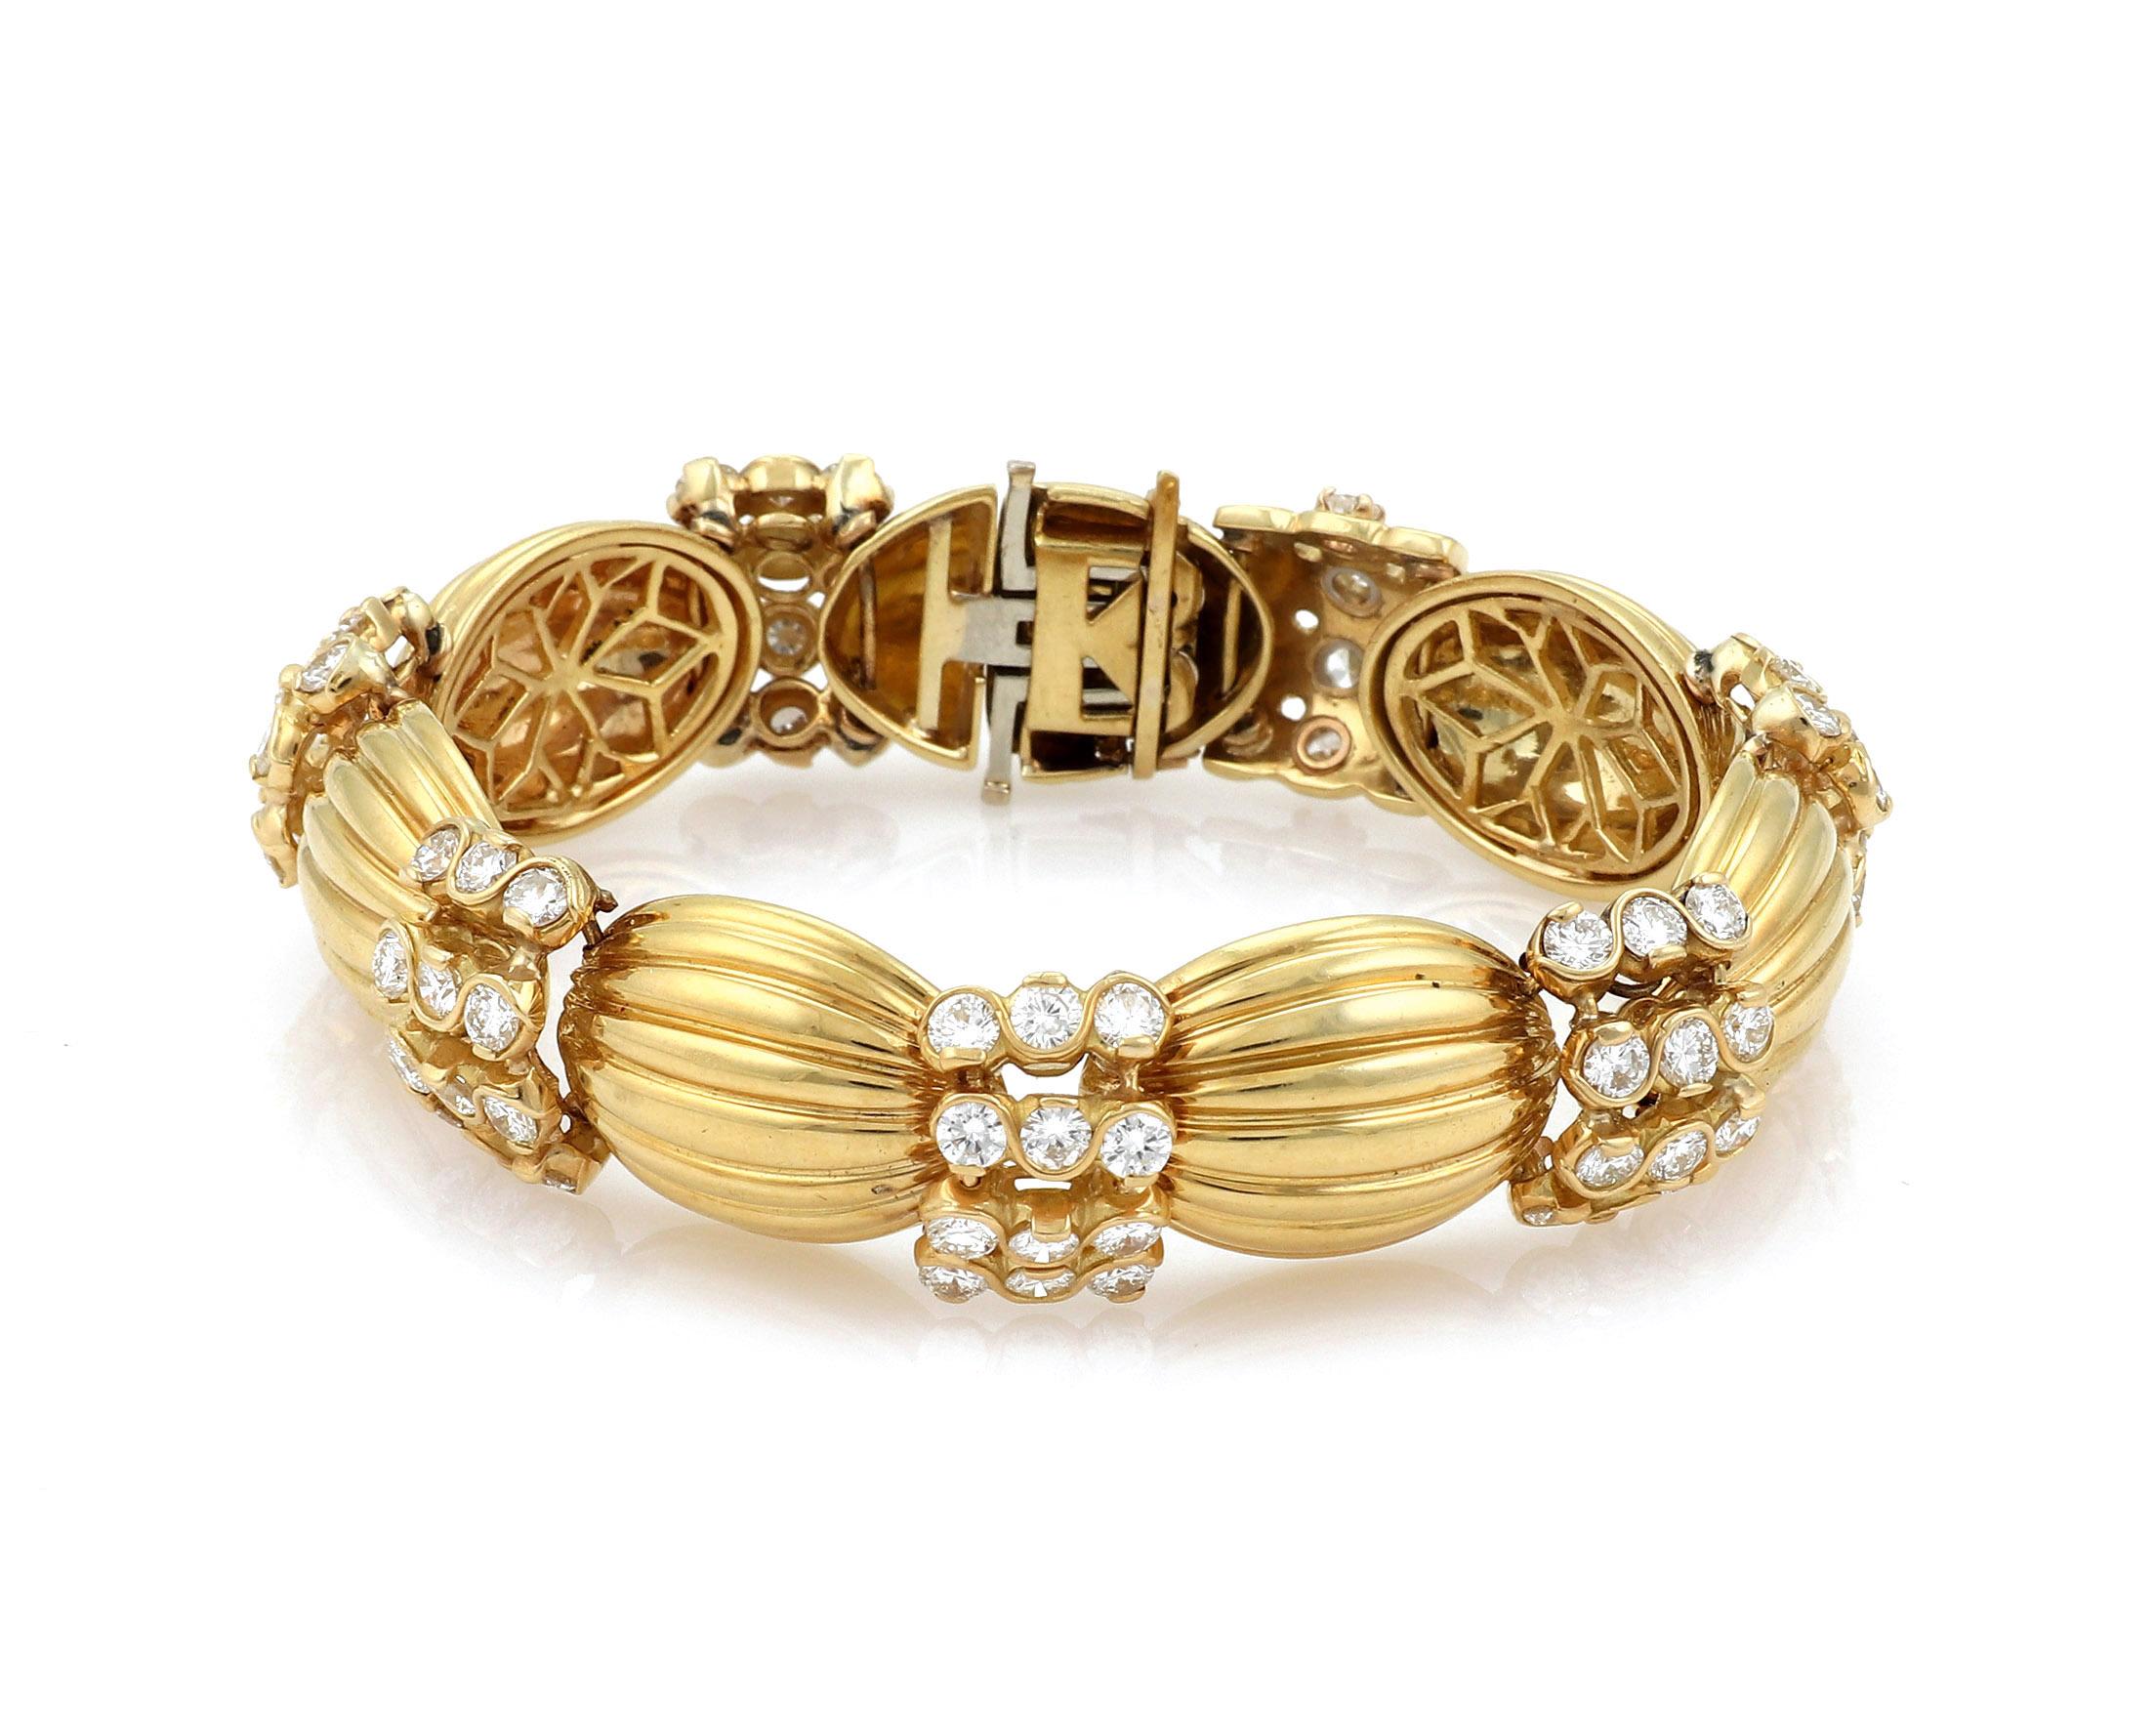 Ce superbe bracelet est fabriqué en or jaune 18 carats massif avec une finition polie et comporte 7 maillons cannelés en forme de dôme avec 12 diamants ronds montés dans un cadre en forme de tourbillon entre chaque maillon cannelé en forme de dôme.